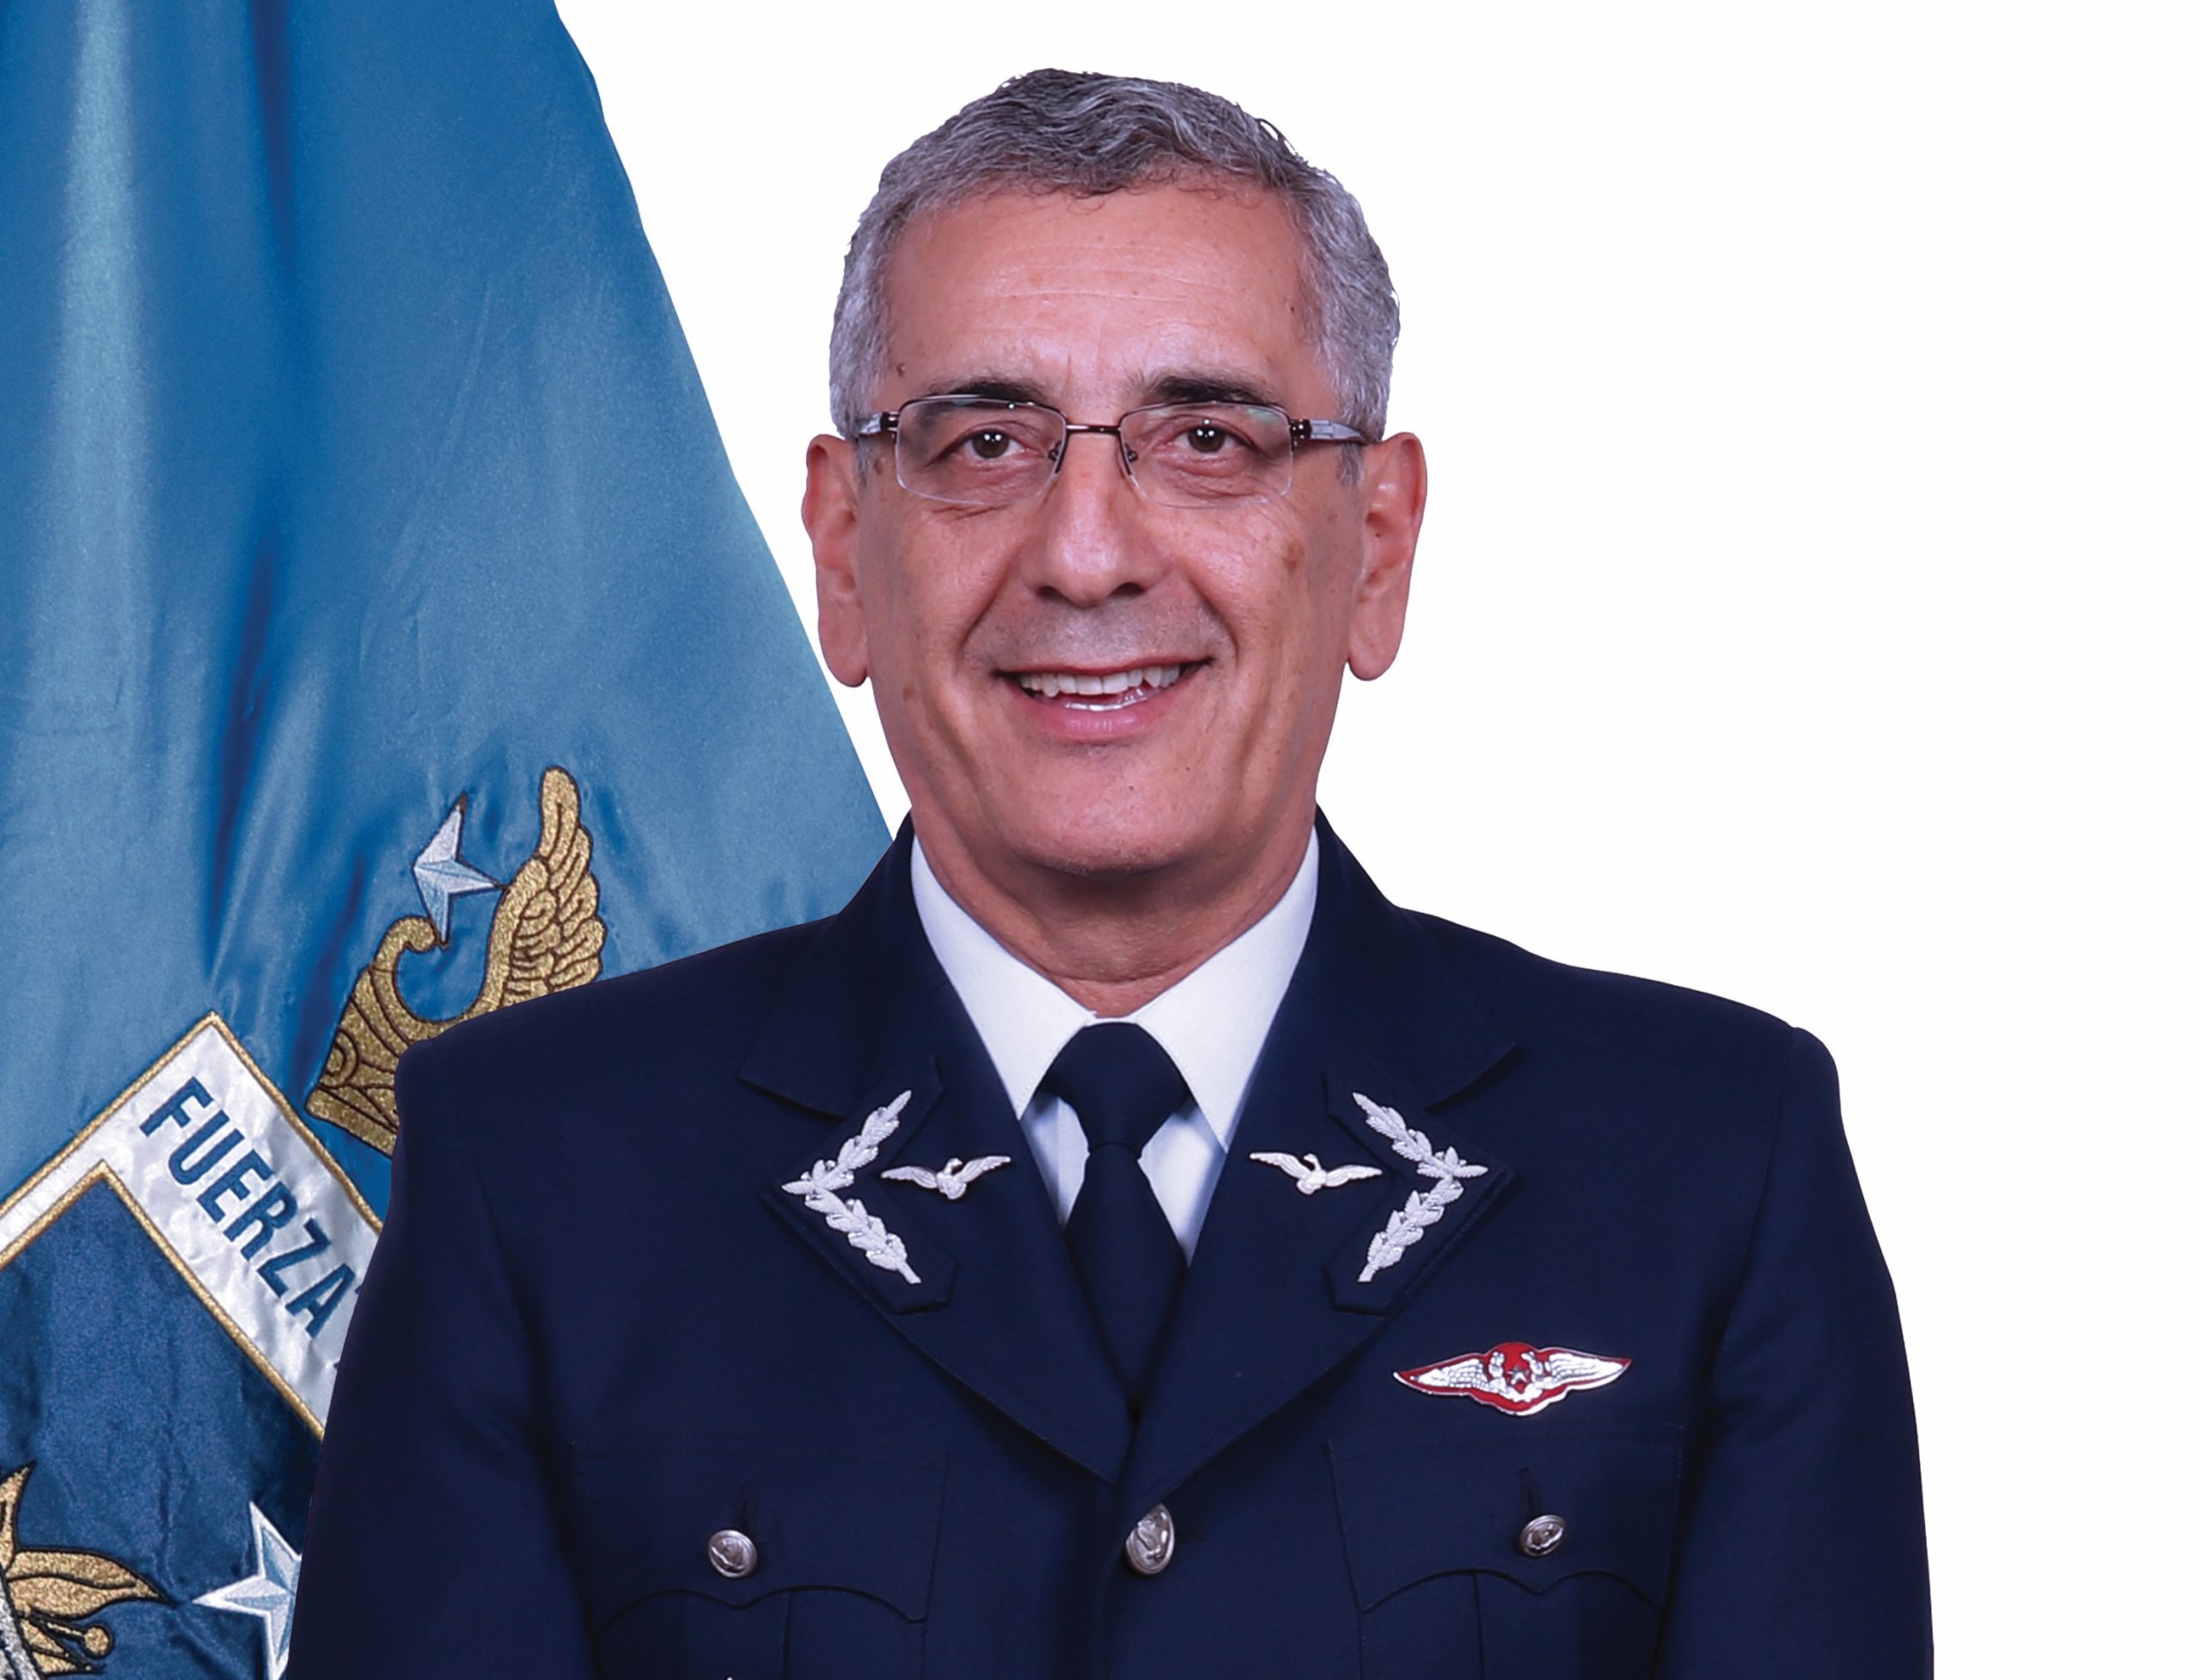 Fuerza Aérea de Chile: 94 años siendo guardianes de los cielos del país | Hugo Rodríguez González, General del Aire, Comandante en Jefe de la Fuerza Aérea de Chile